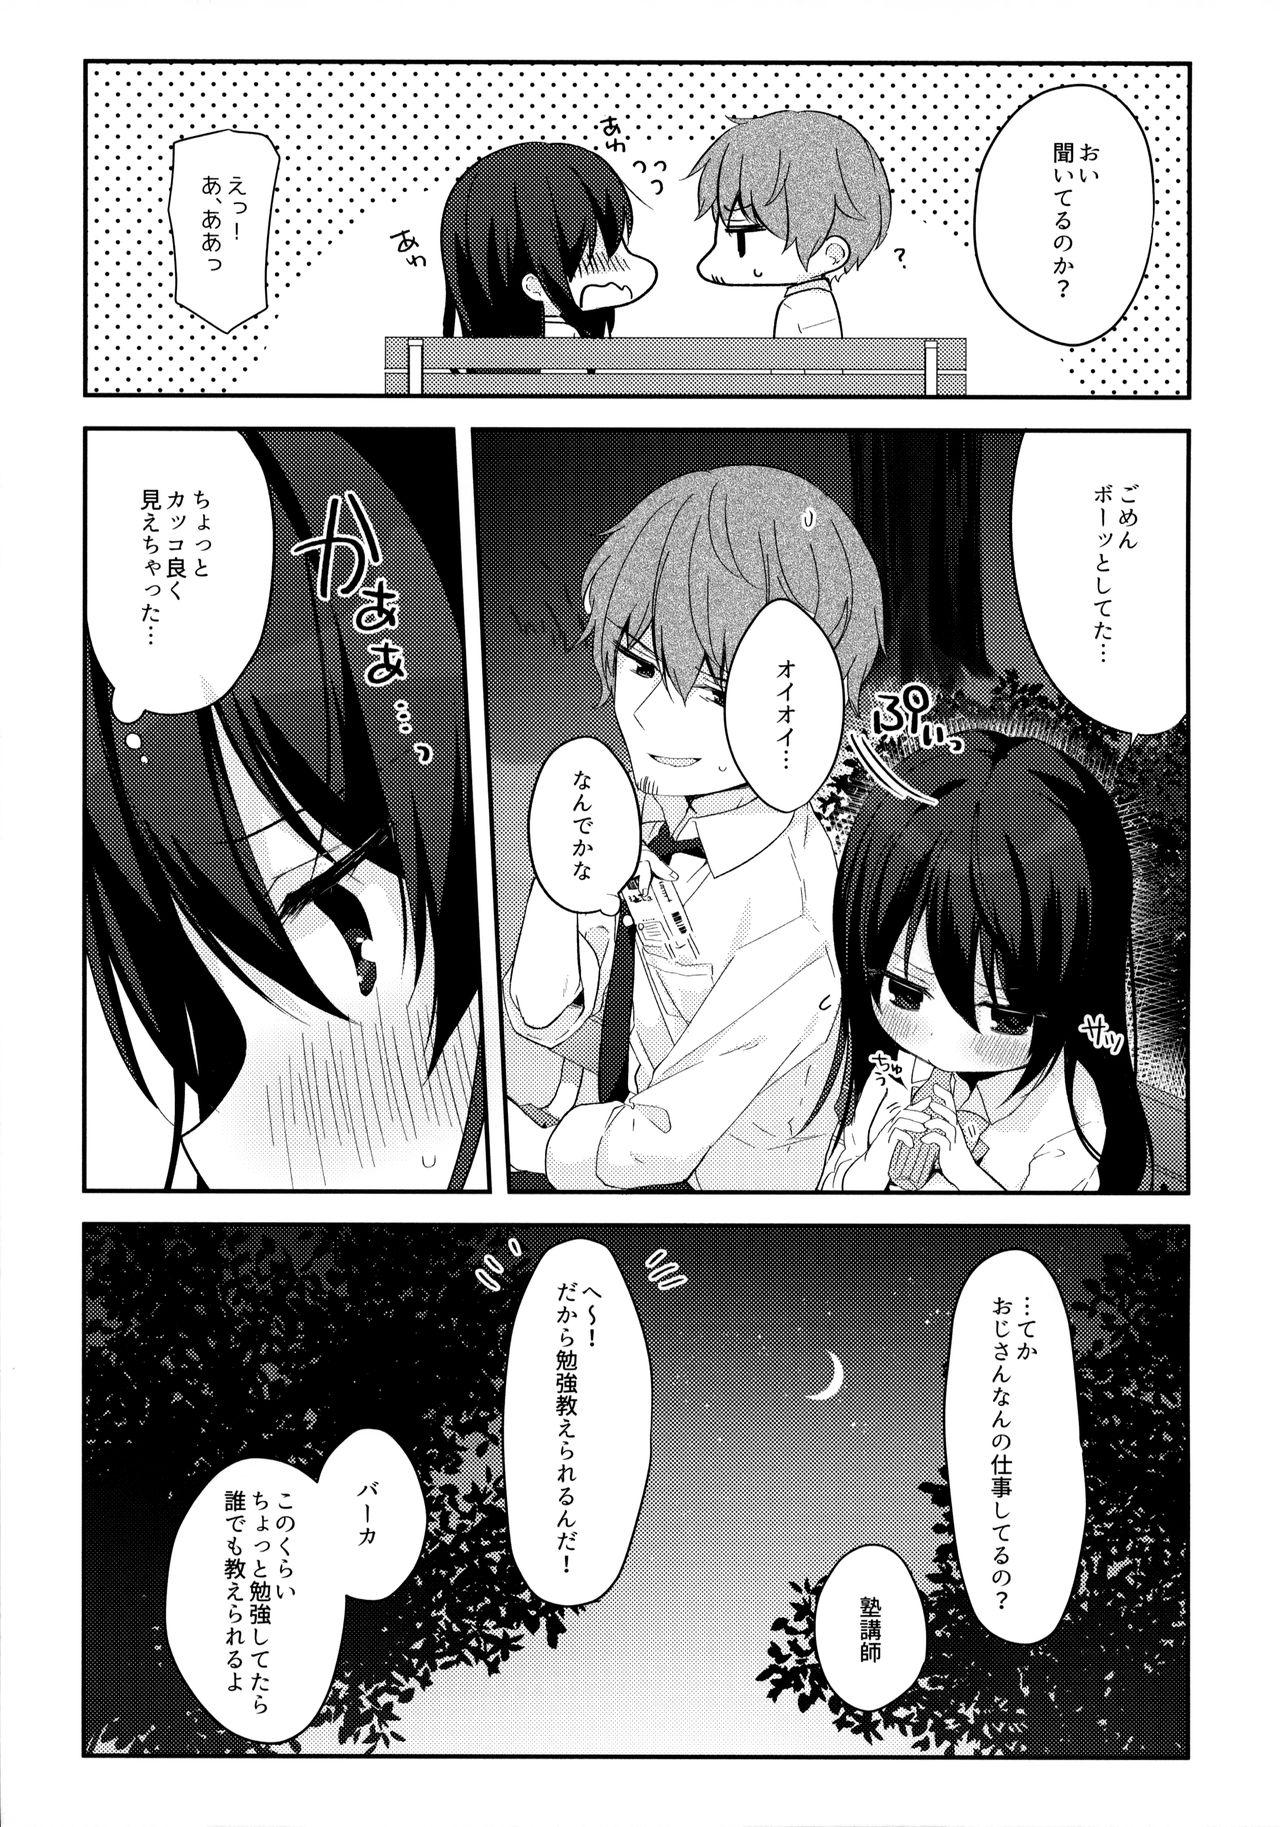 Tributo 12-sai Sa no Himitsu Renai - Original Chastity - Page 8